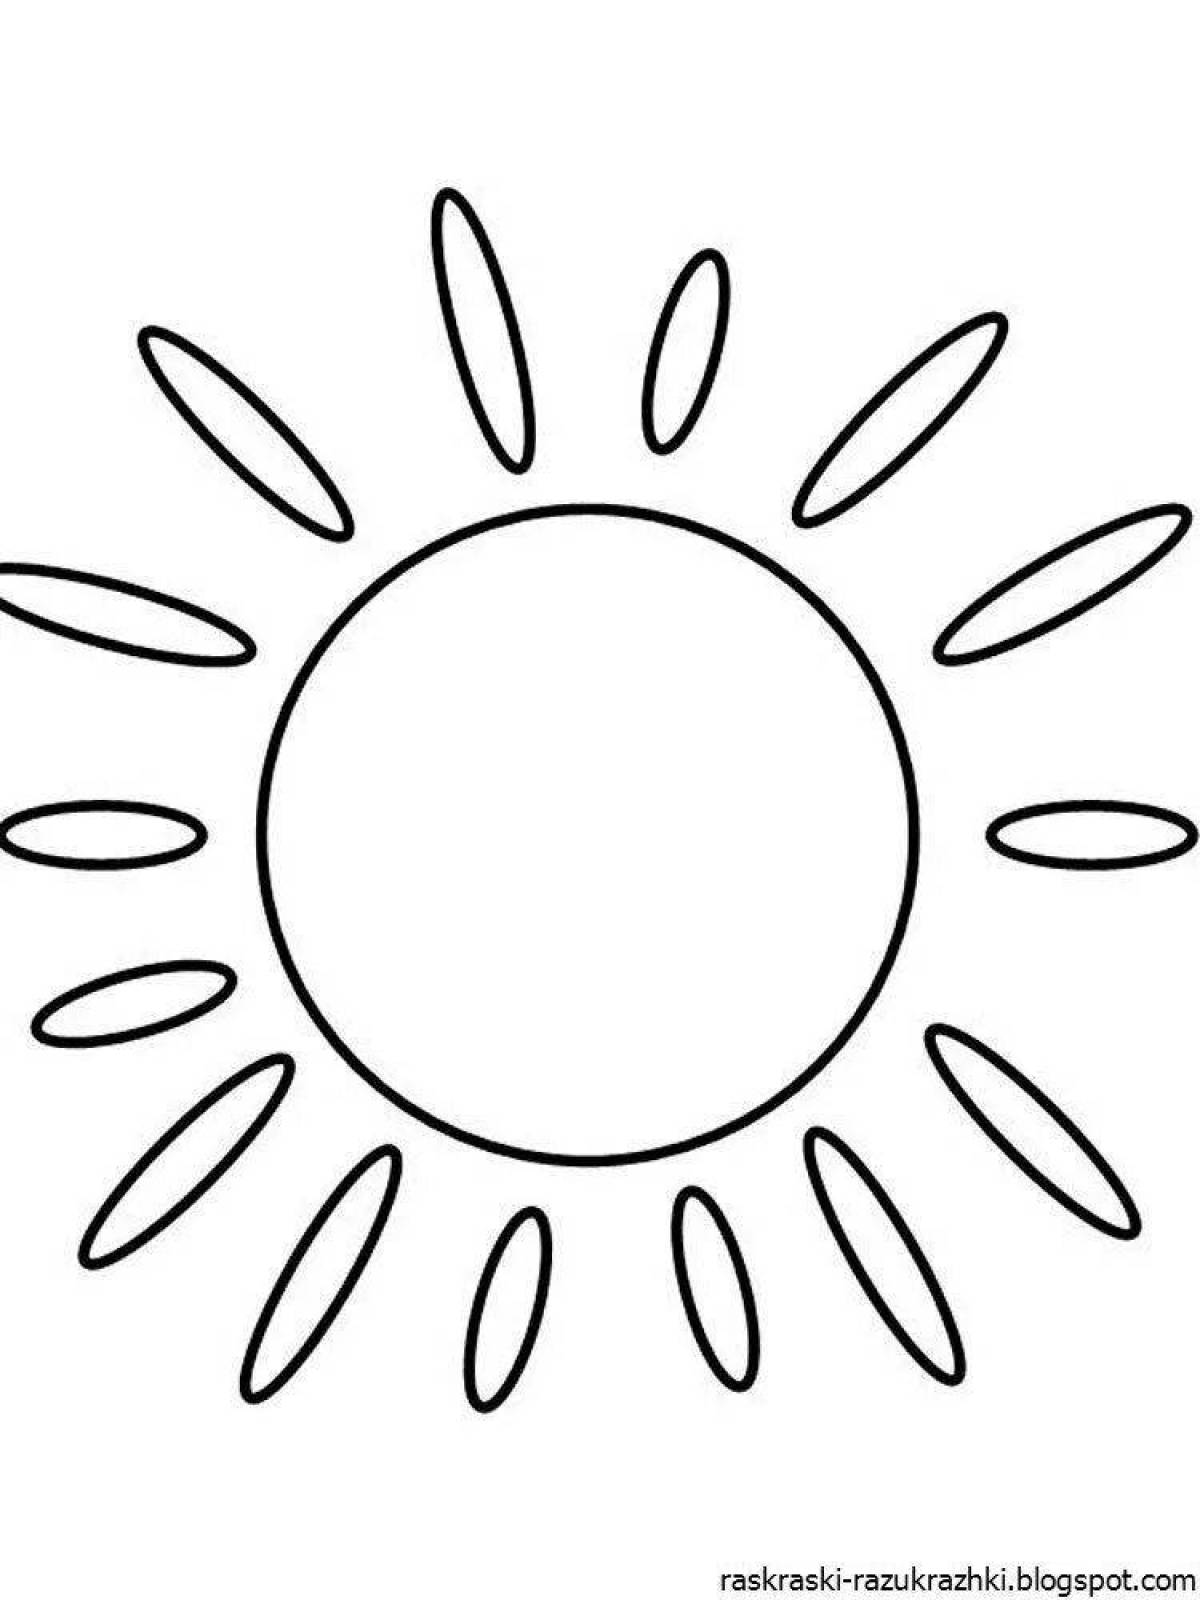 Очаровательная раскраска солнышко для детей 2-3 лет